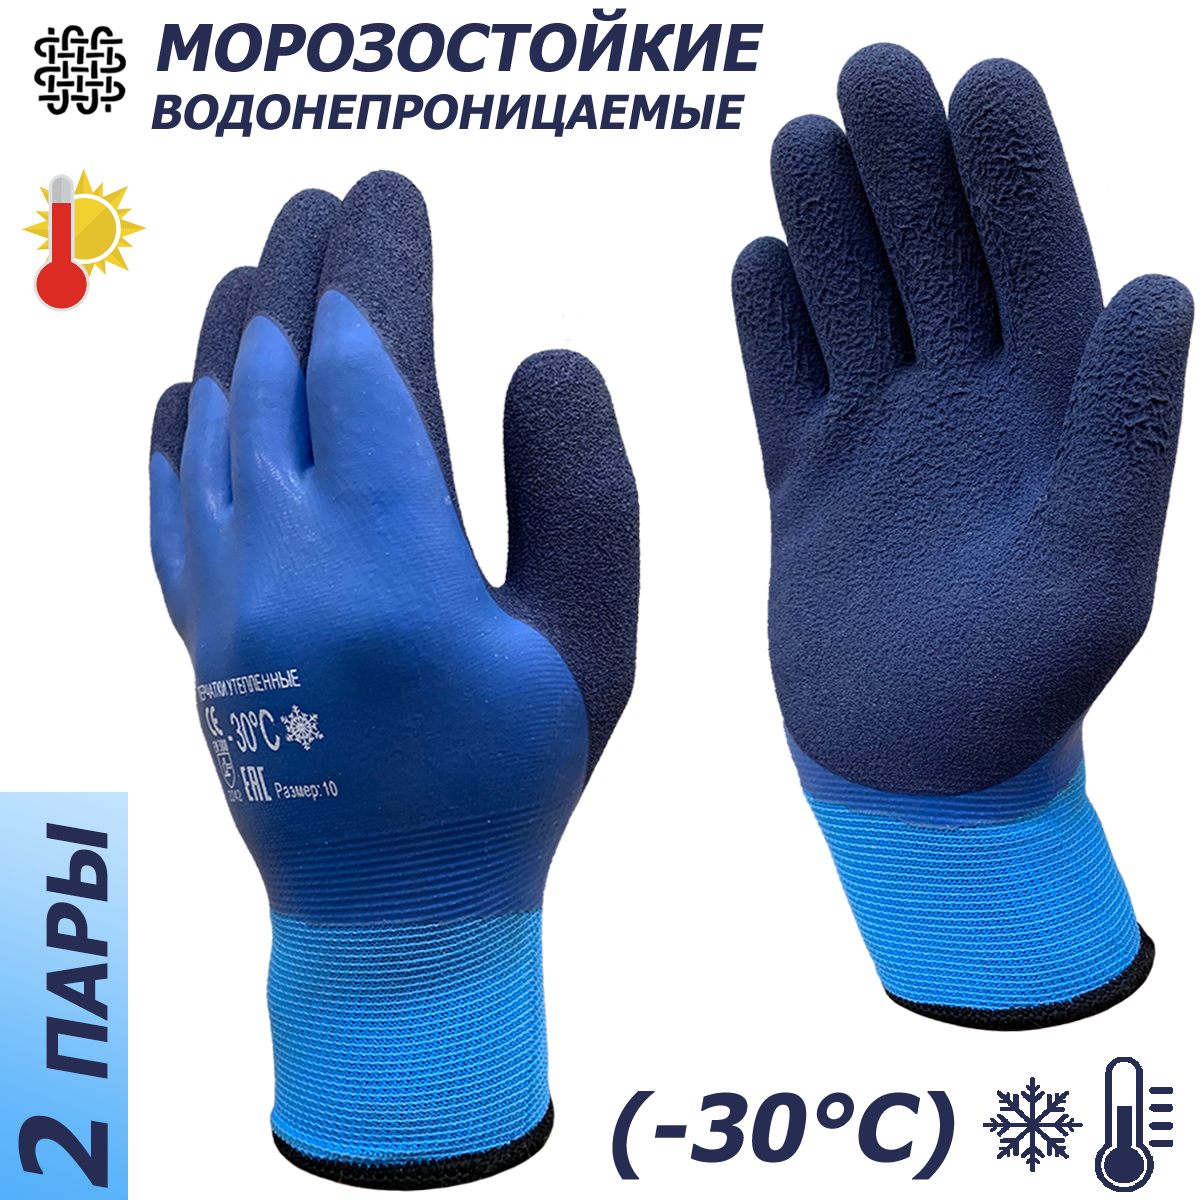 2 пары. Утепленные водонепроницаемые перчатки Master-Pro ханты (надым) махровые акриловые с полным морозостойким покрытием ПВХ+нитрил 10 размер